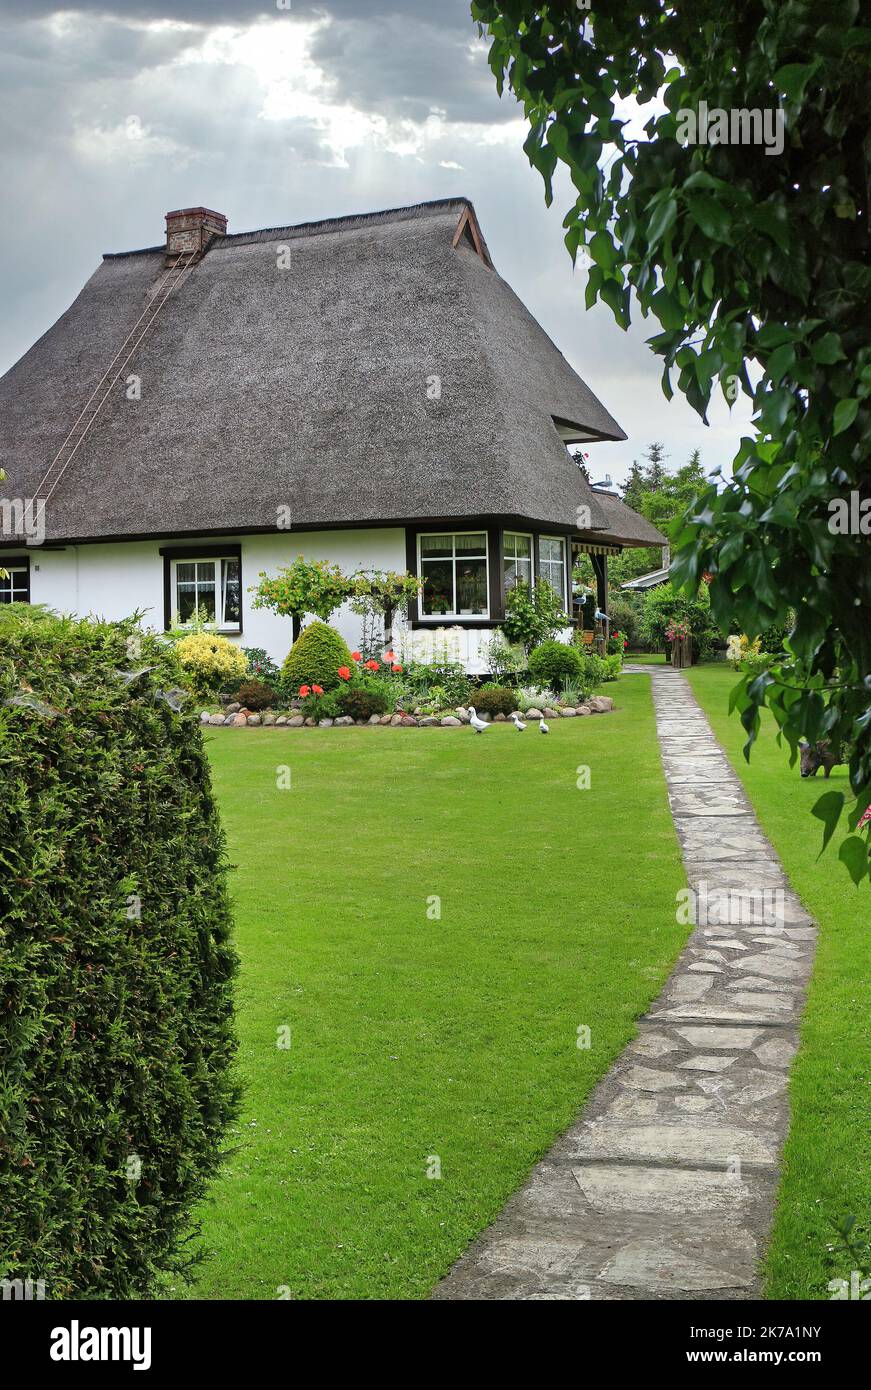 Sentiero con giardino in pietra che conduce ad una casa tradizionale con tetto in paglia Foto Stock